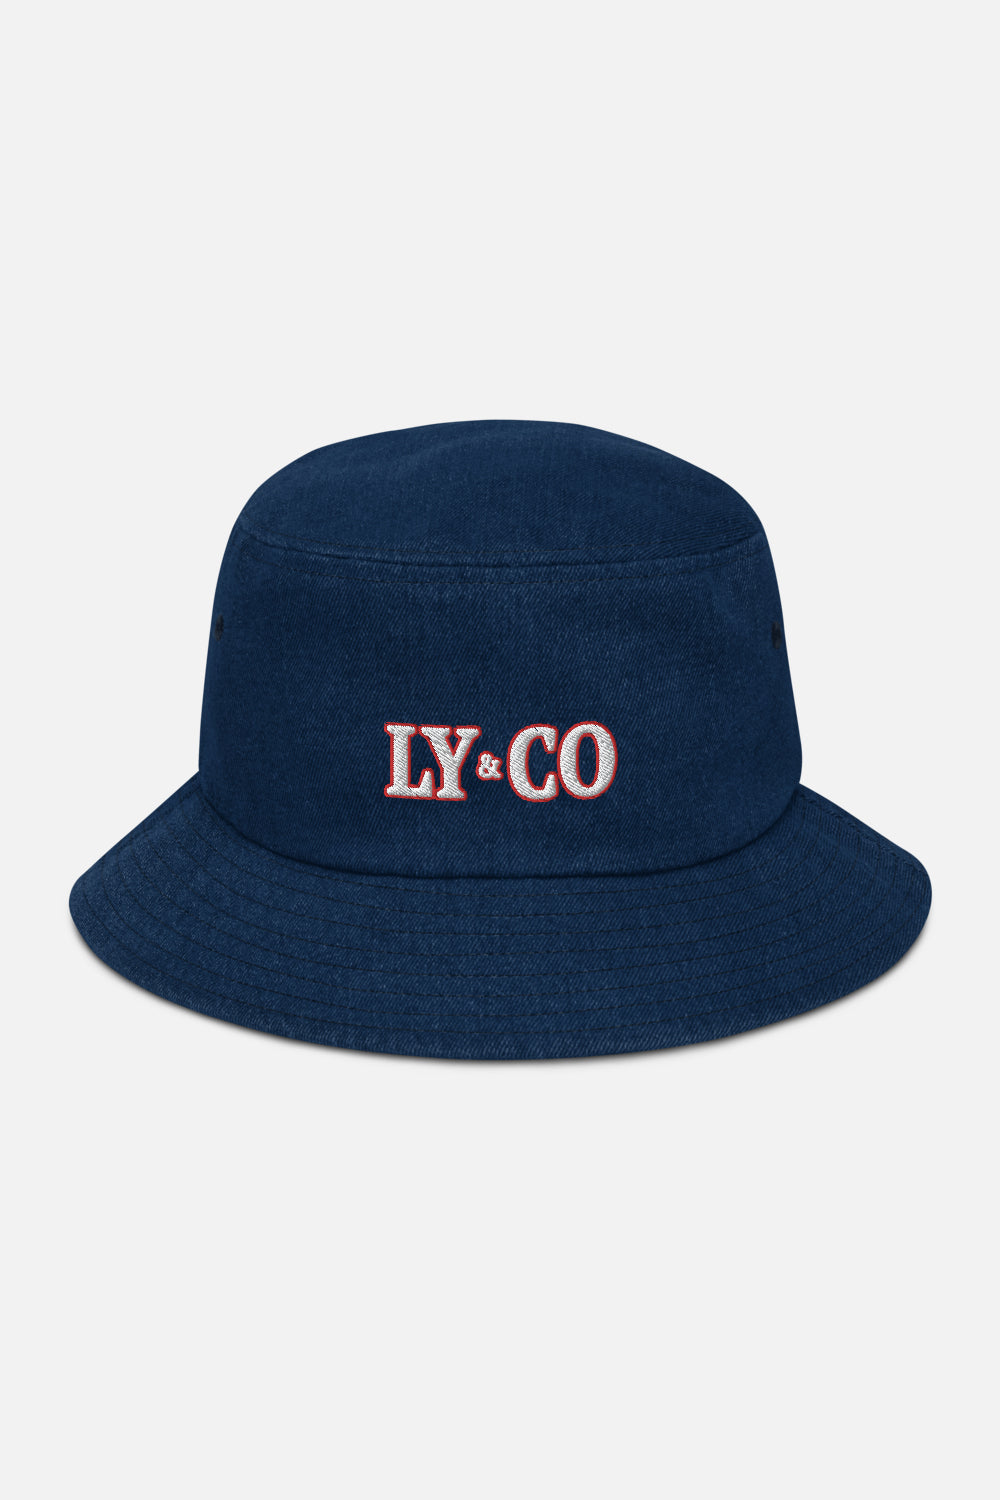 45％割引グレイ系すぐったレディース福袋 RILY Logo Denim Bucket Hat その他 帽子グレイ系-OTA.ON.ARENA